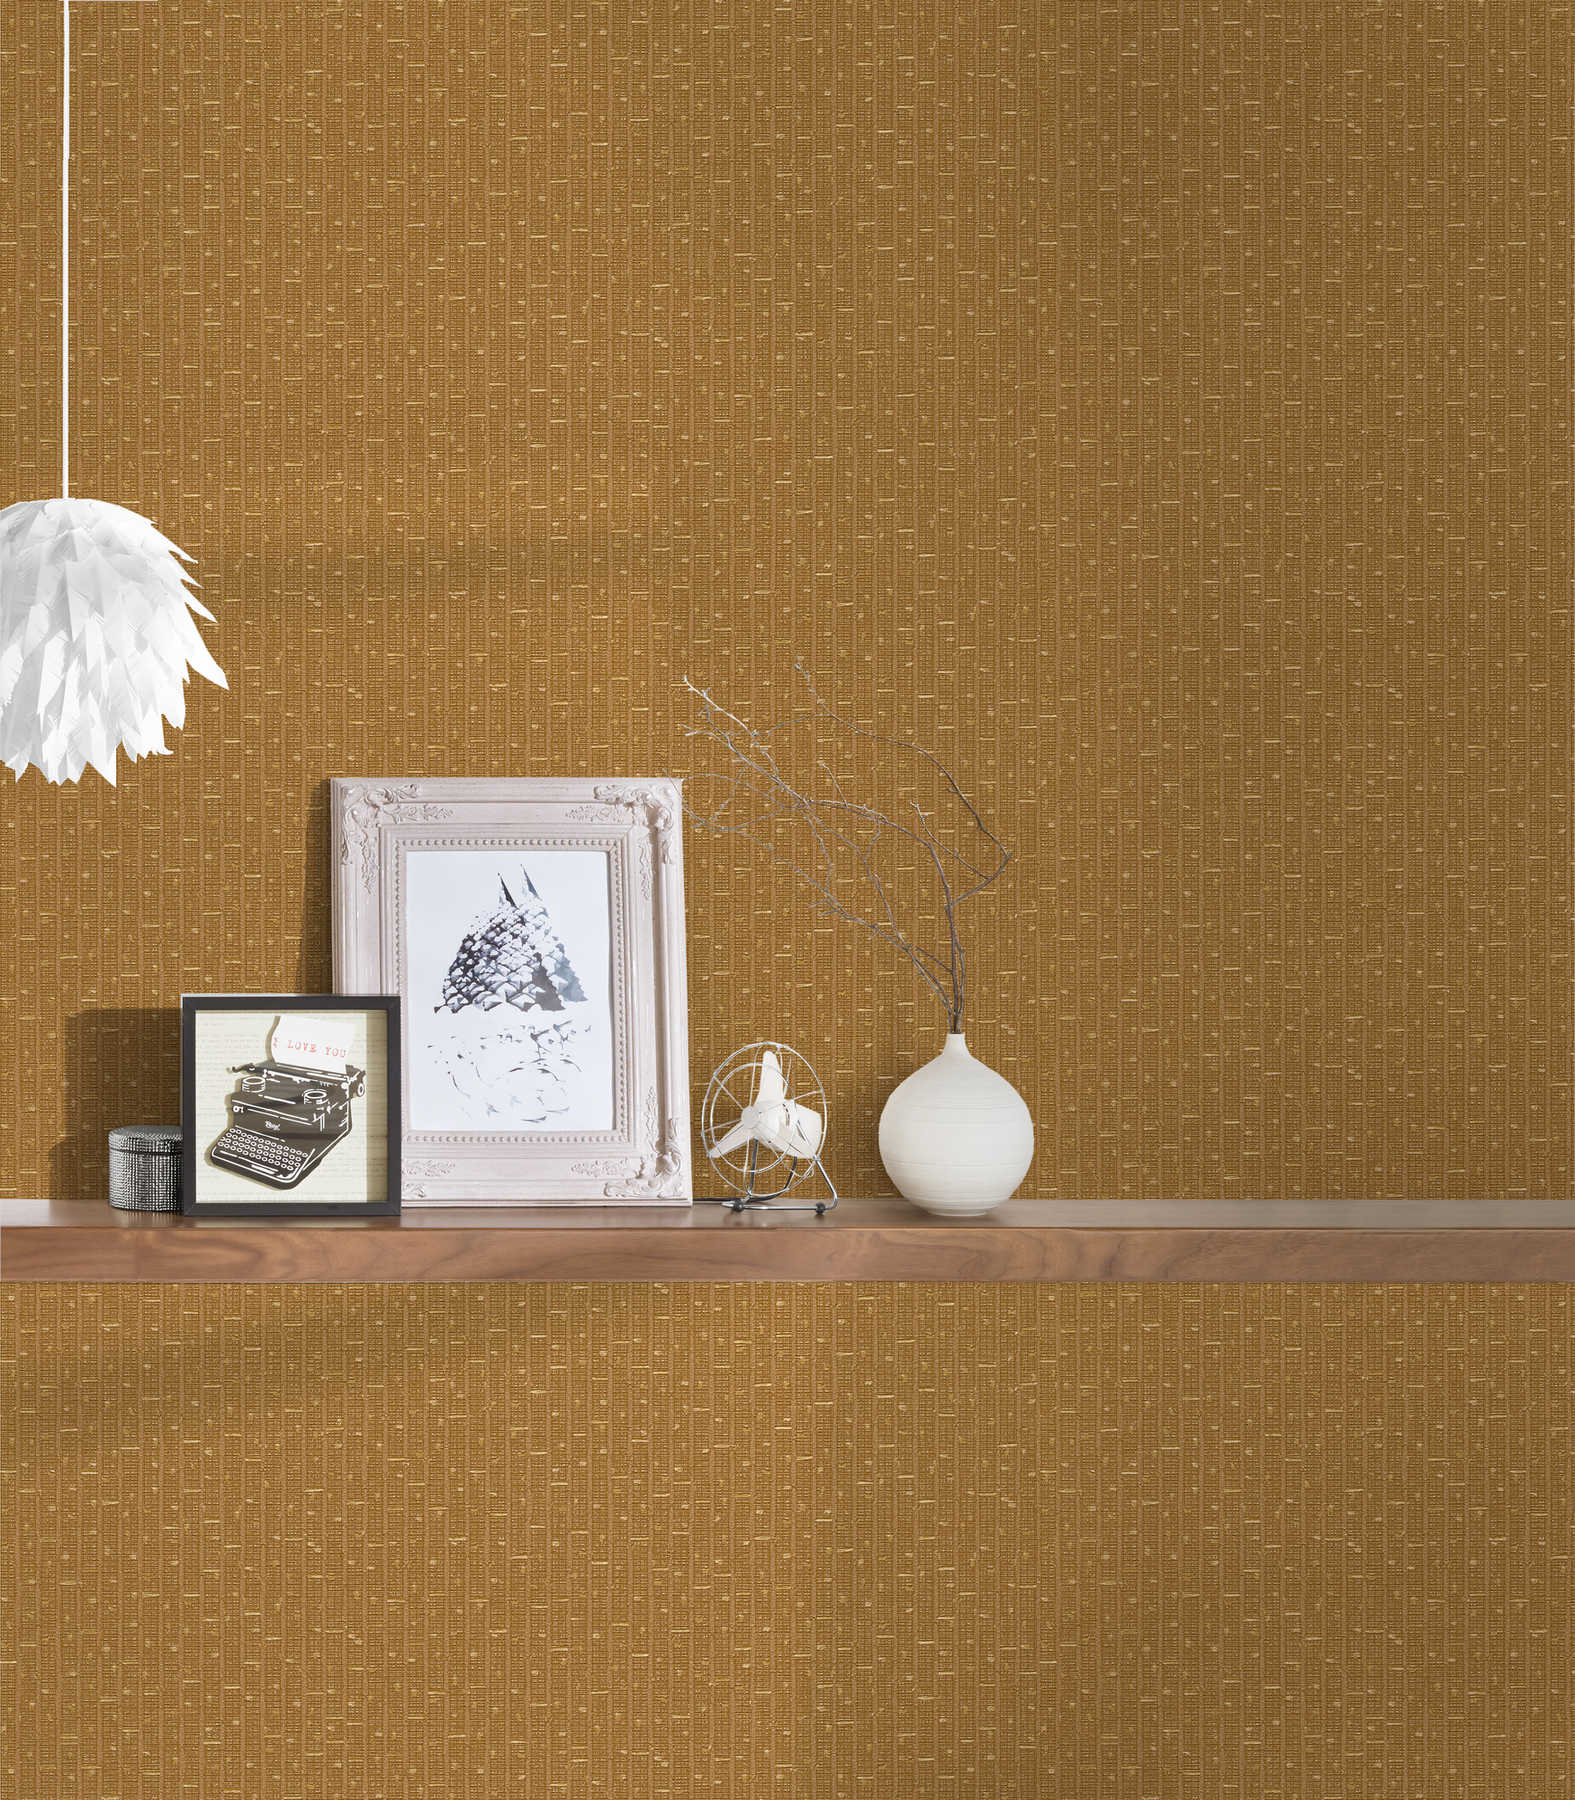             Non-woven wallpaper VERSACE gold metallic pattern & texture effect
        